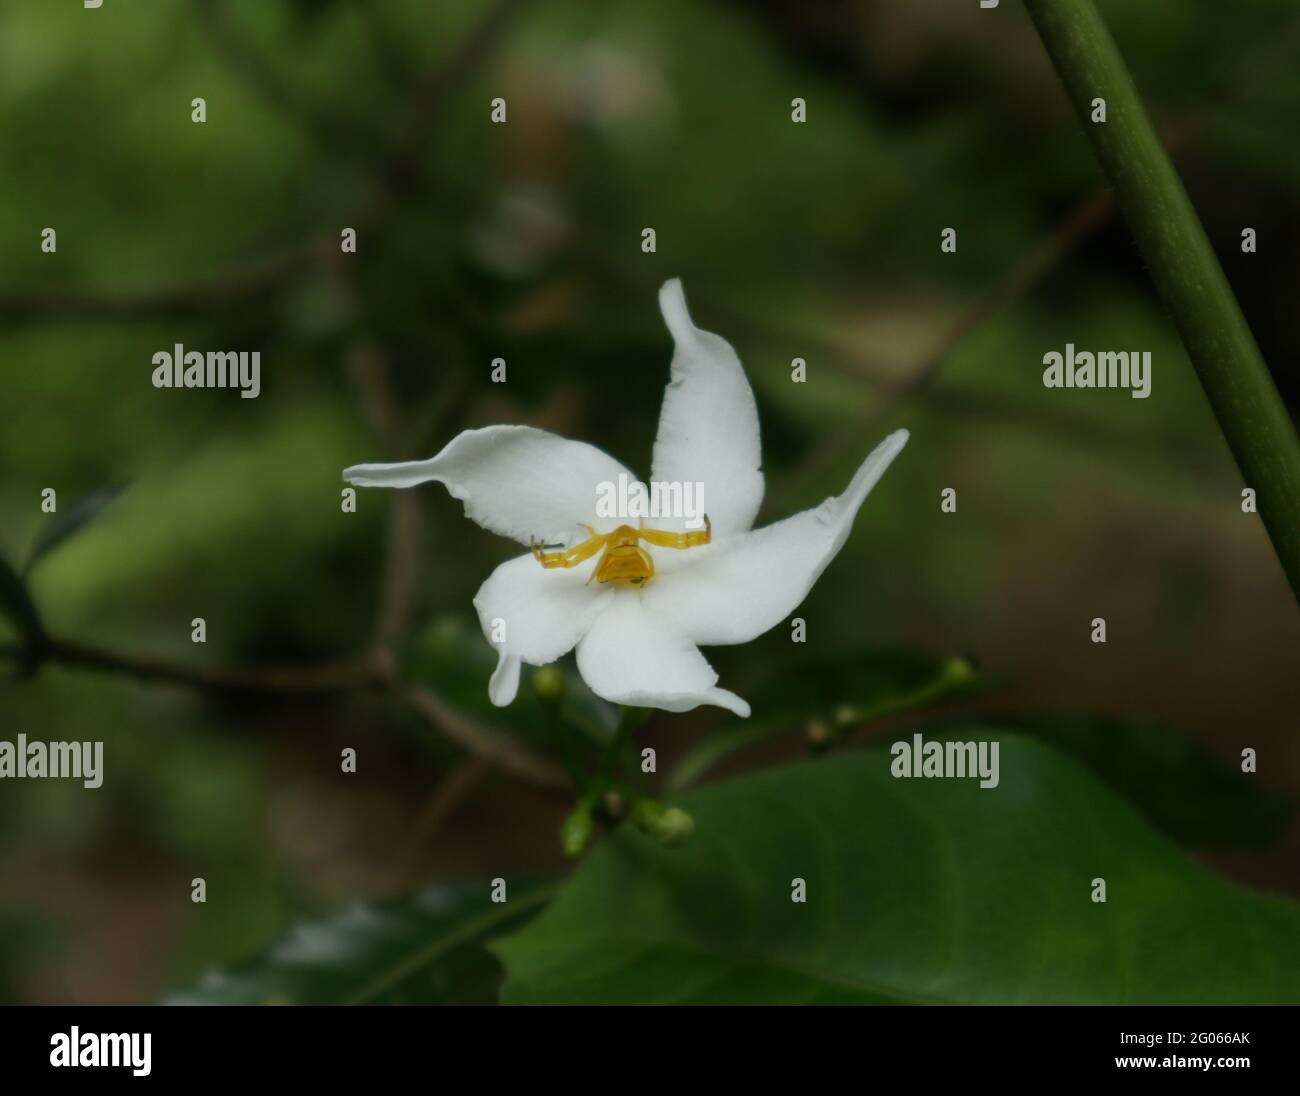 Une araignée jaune qui répand ses mains sur une fleur blanche en prévision de la proie Banque D'Images